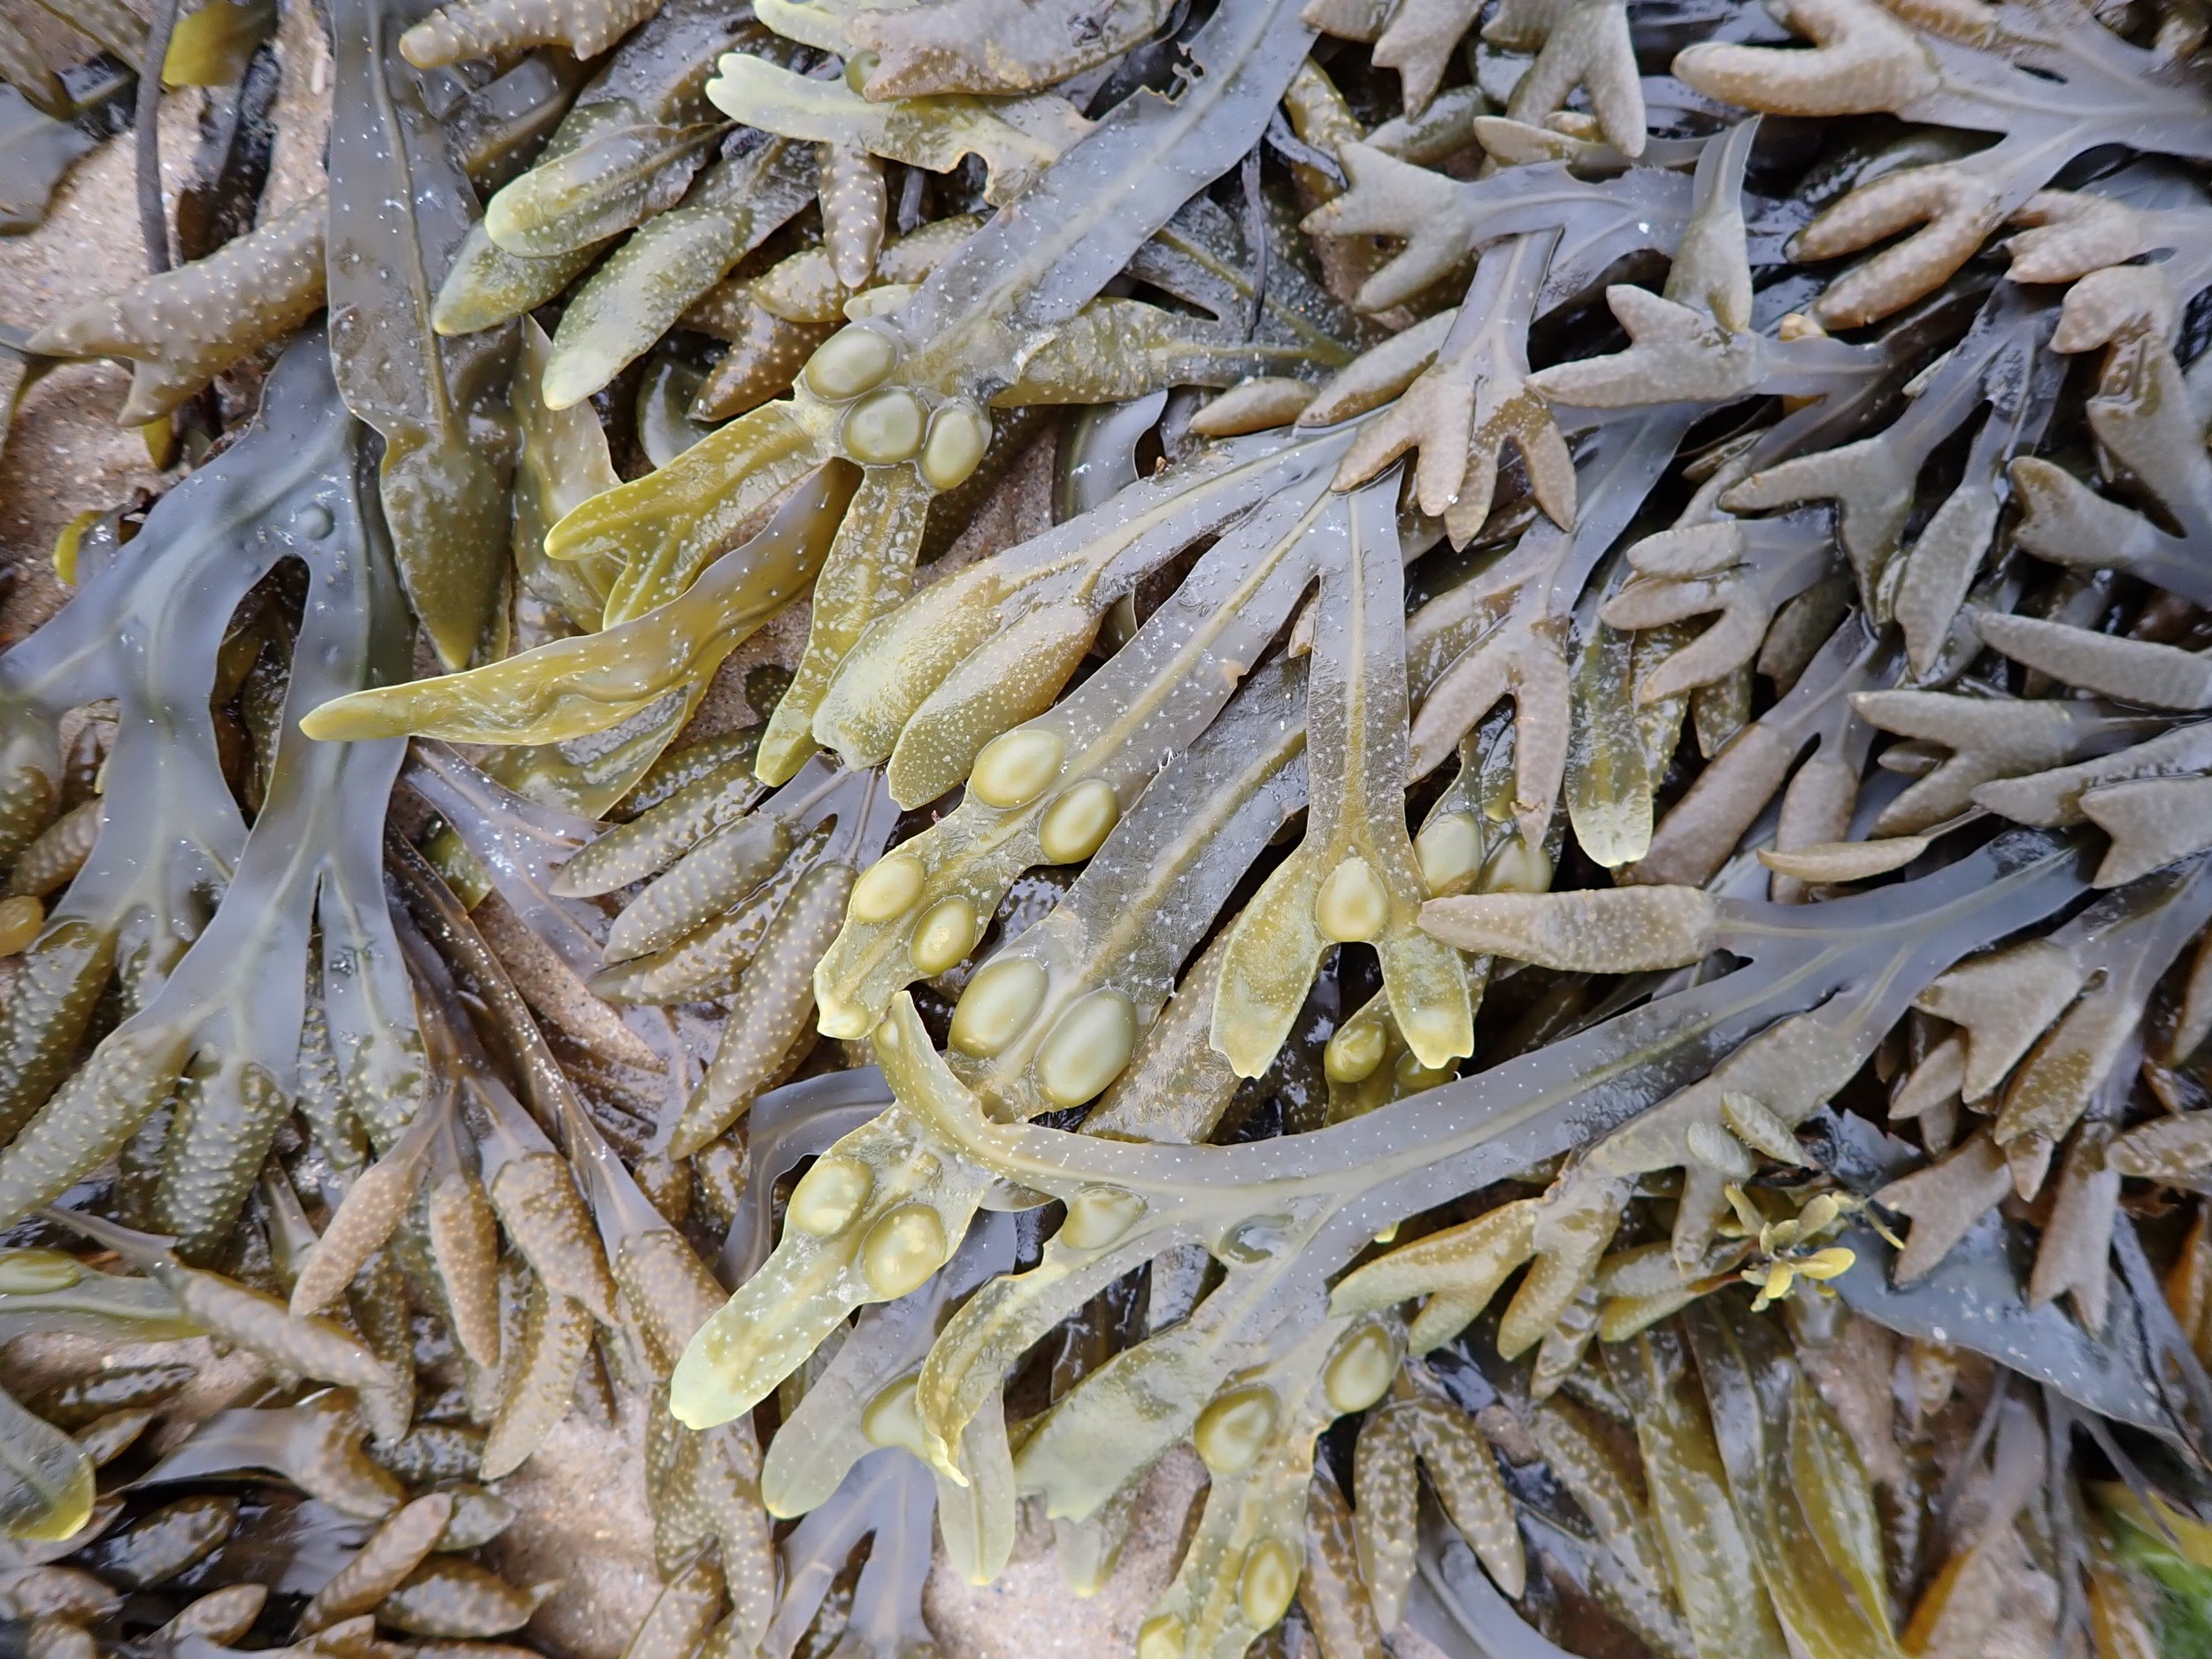 Bladder wrack seaweed at Pet Level